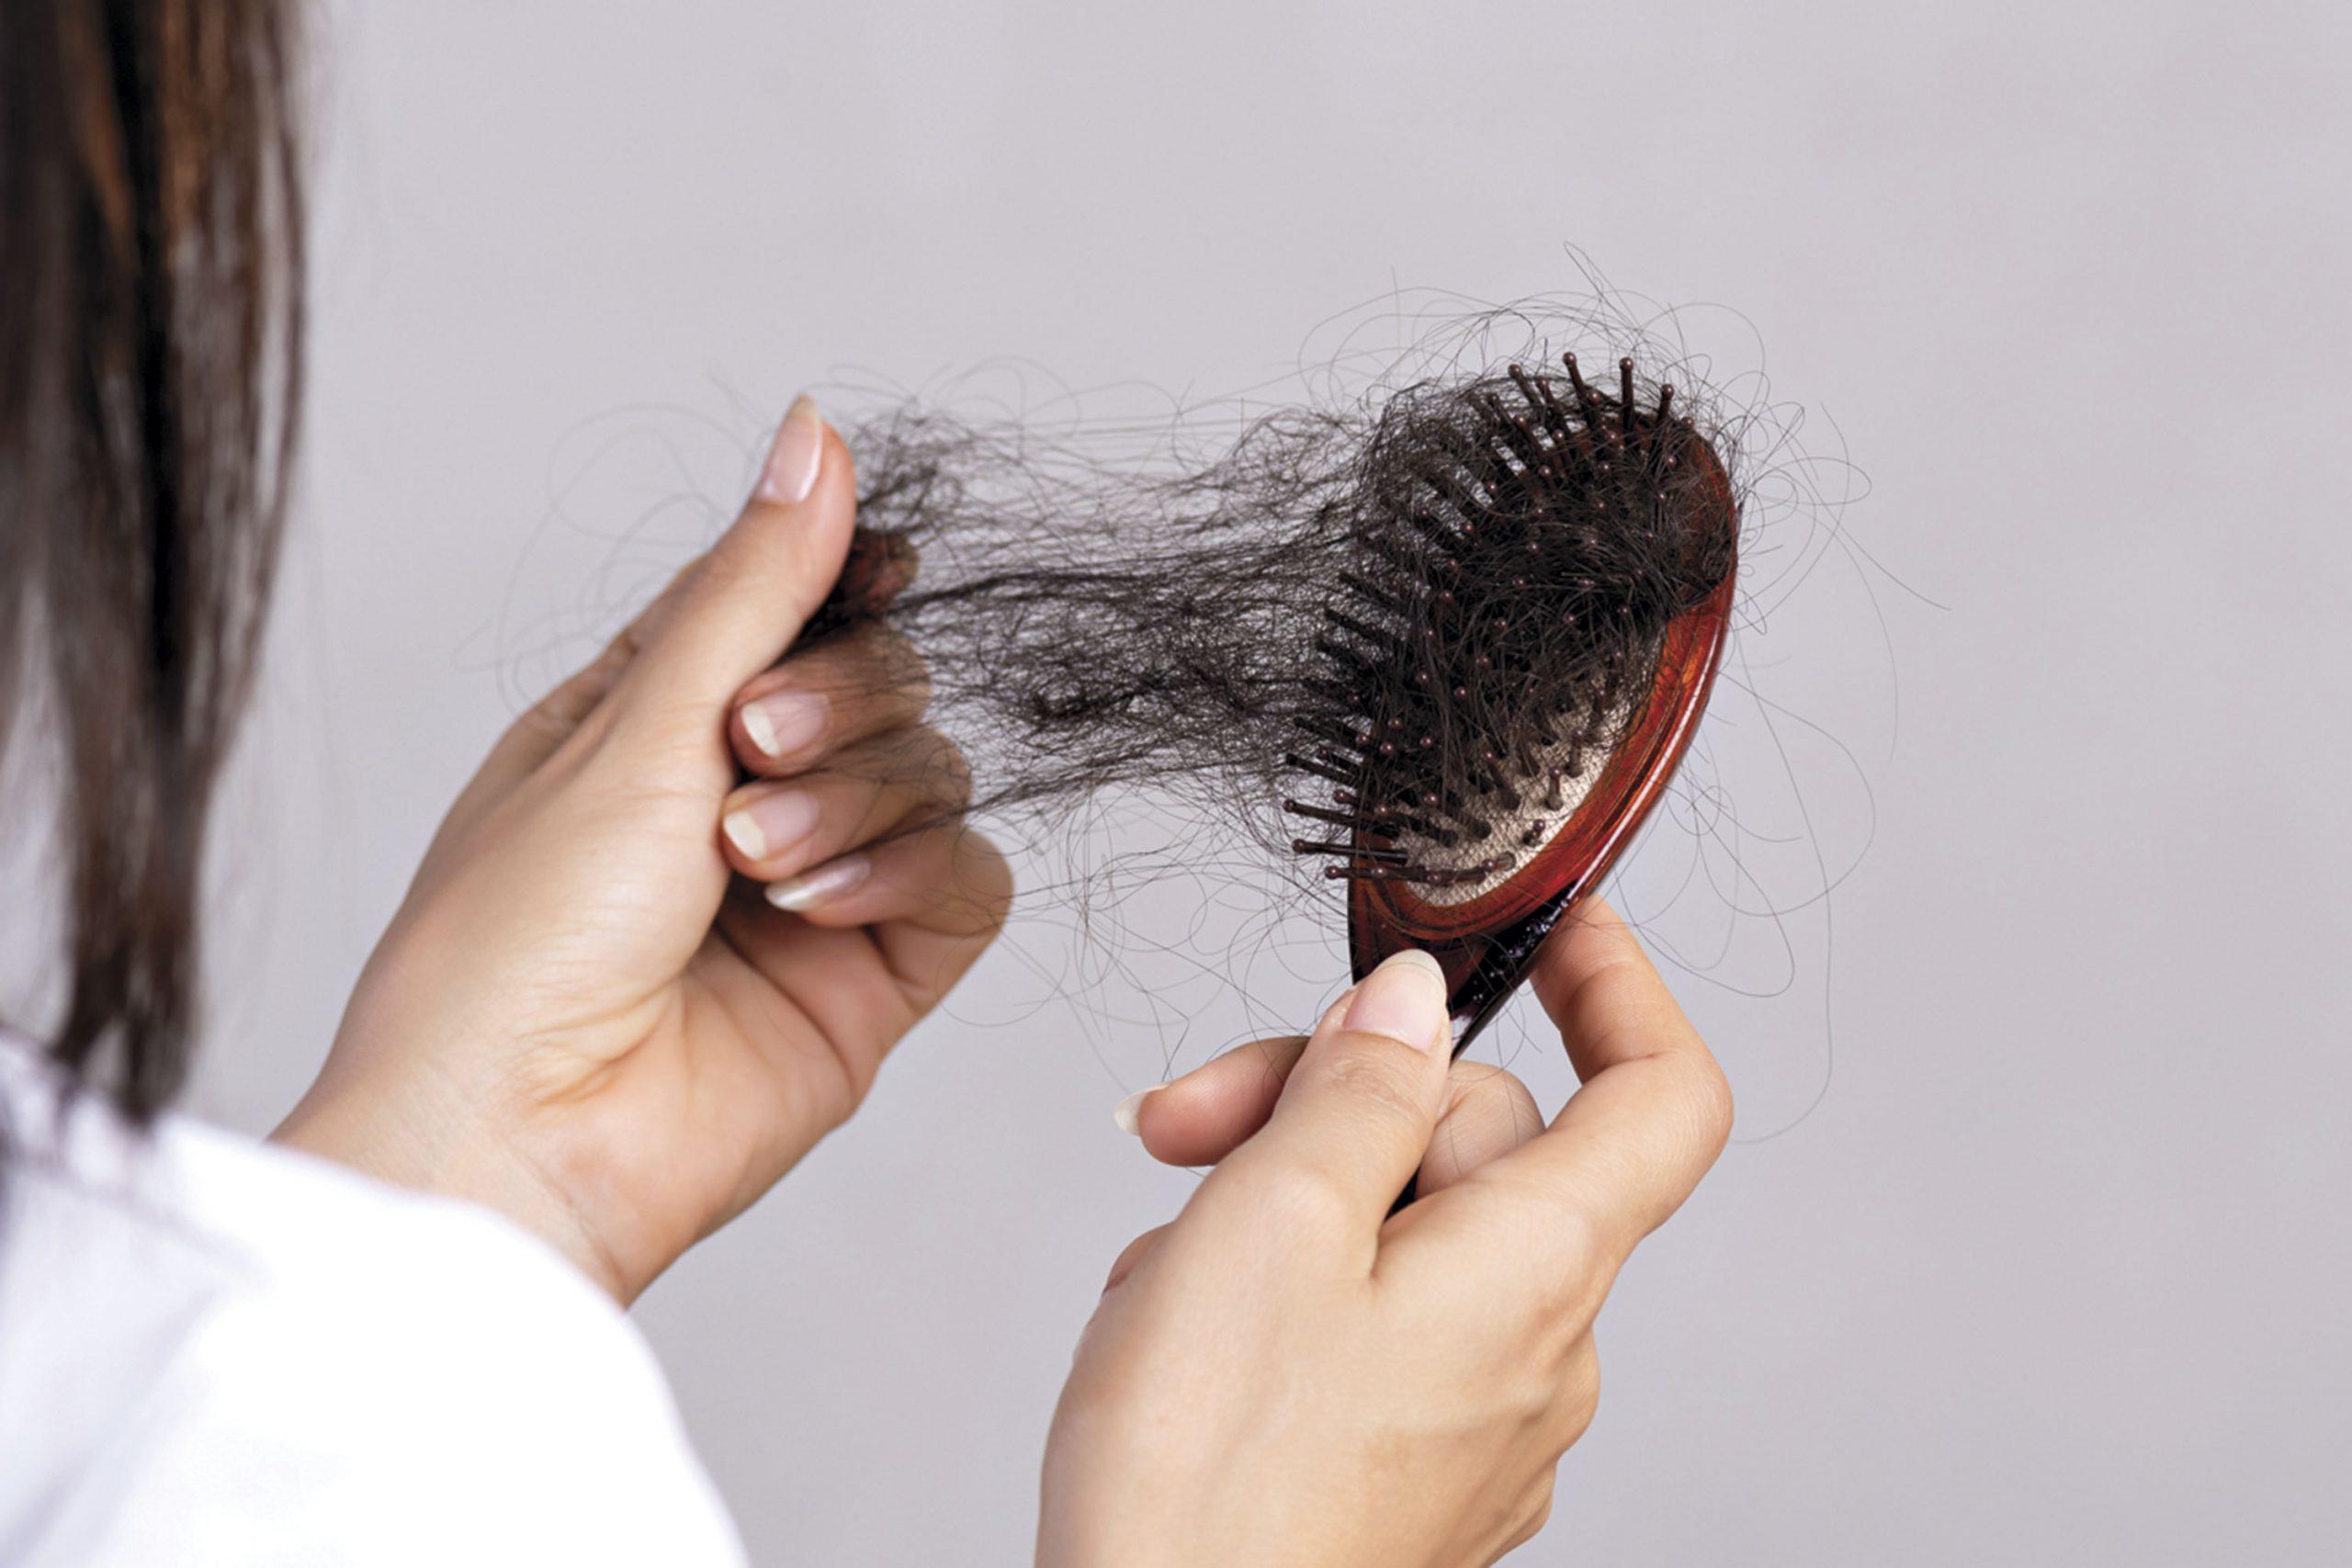 علت اصلی ریزش موی زنان و مردان کشف شد

